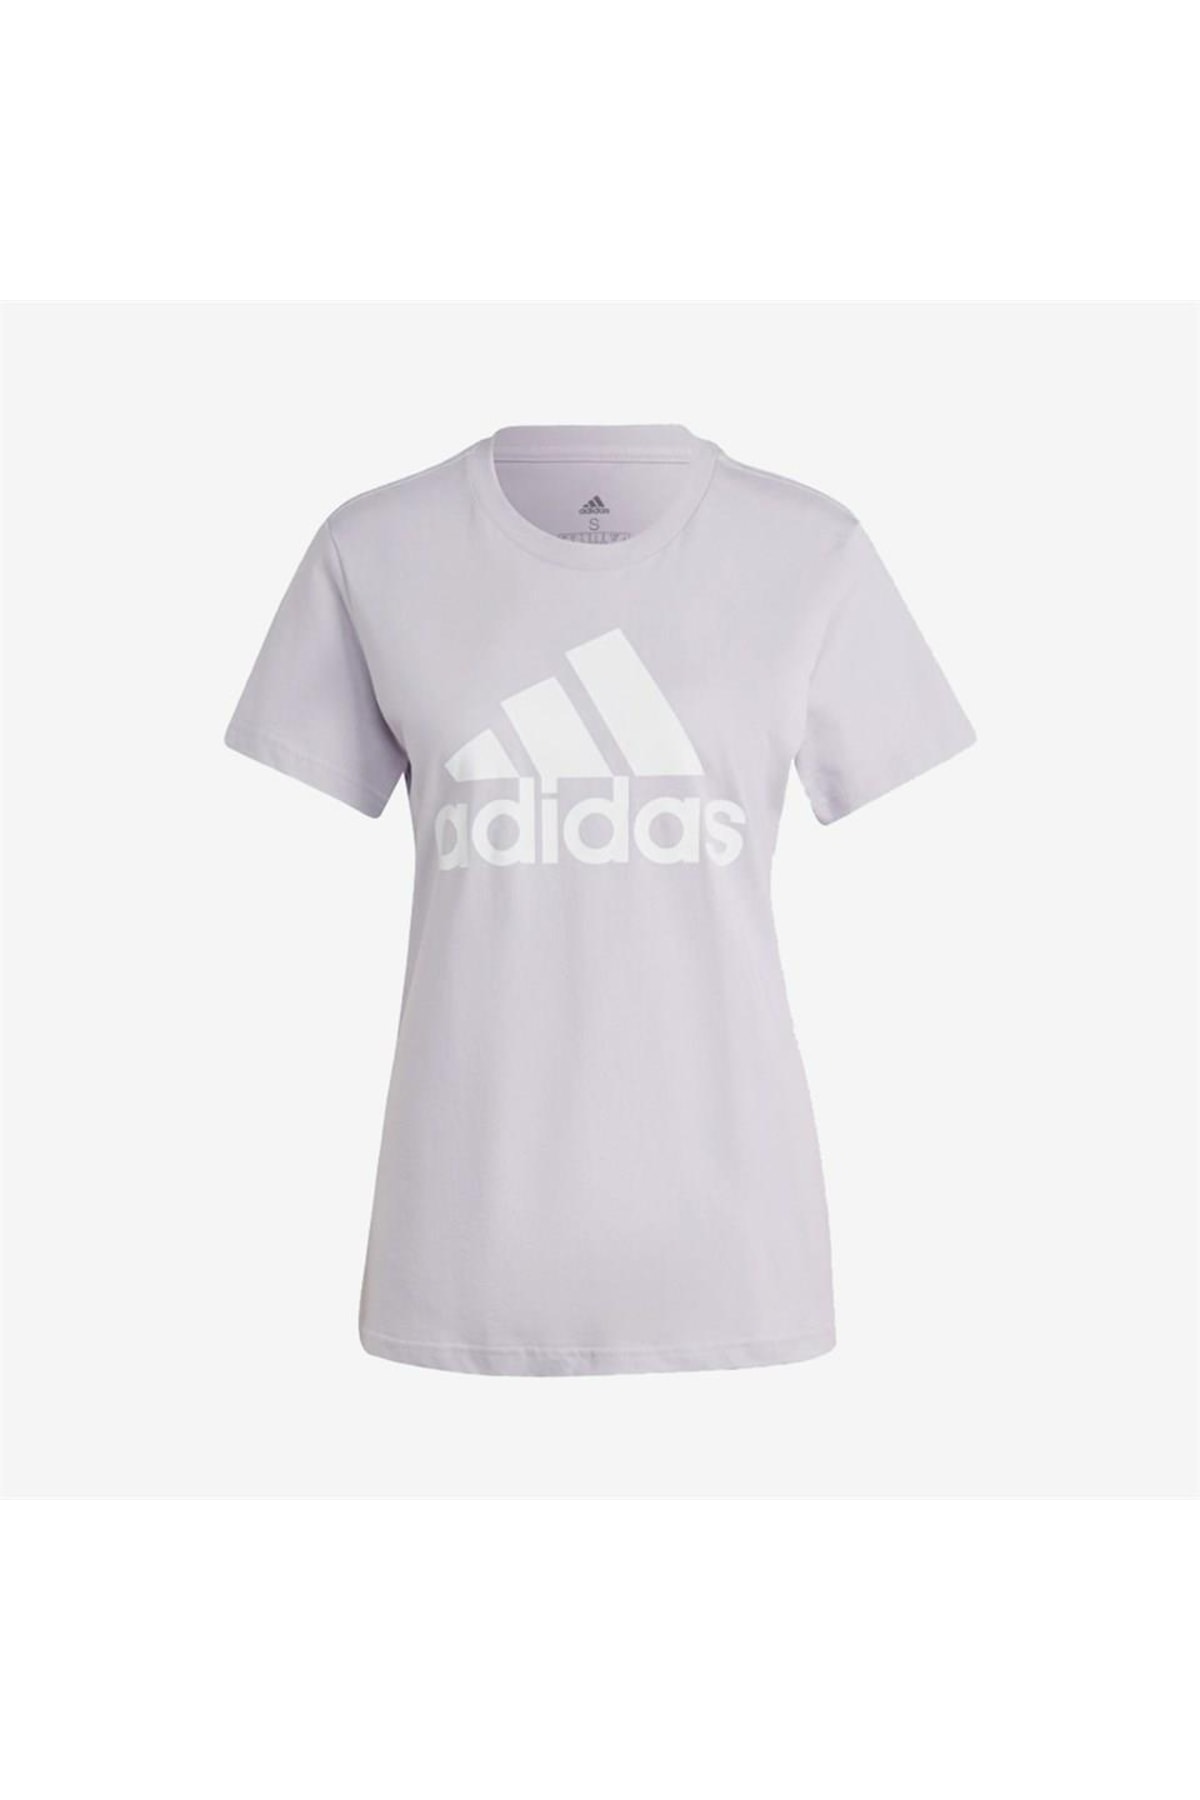 adidas W Big Logo T-shirt Kadın Günlük Tişört Ic0633